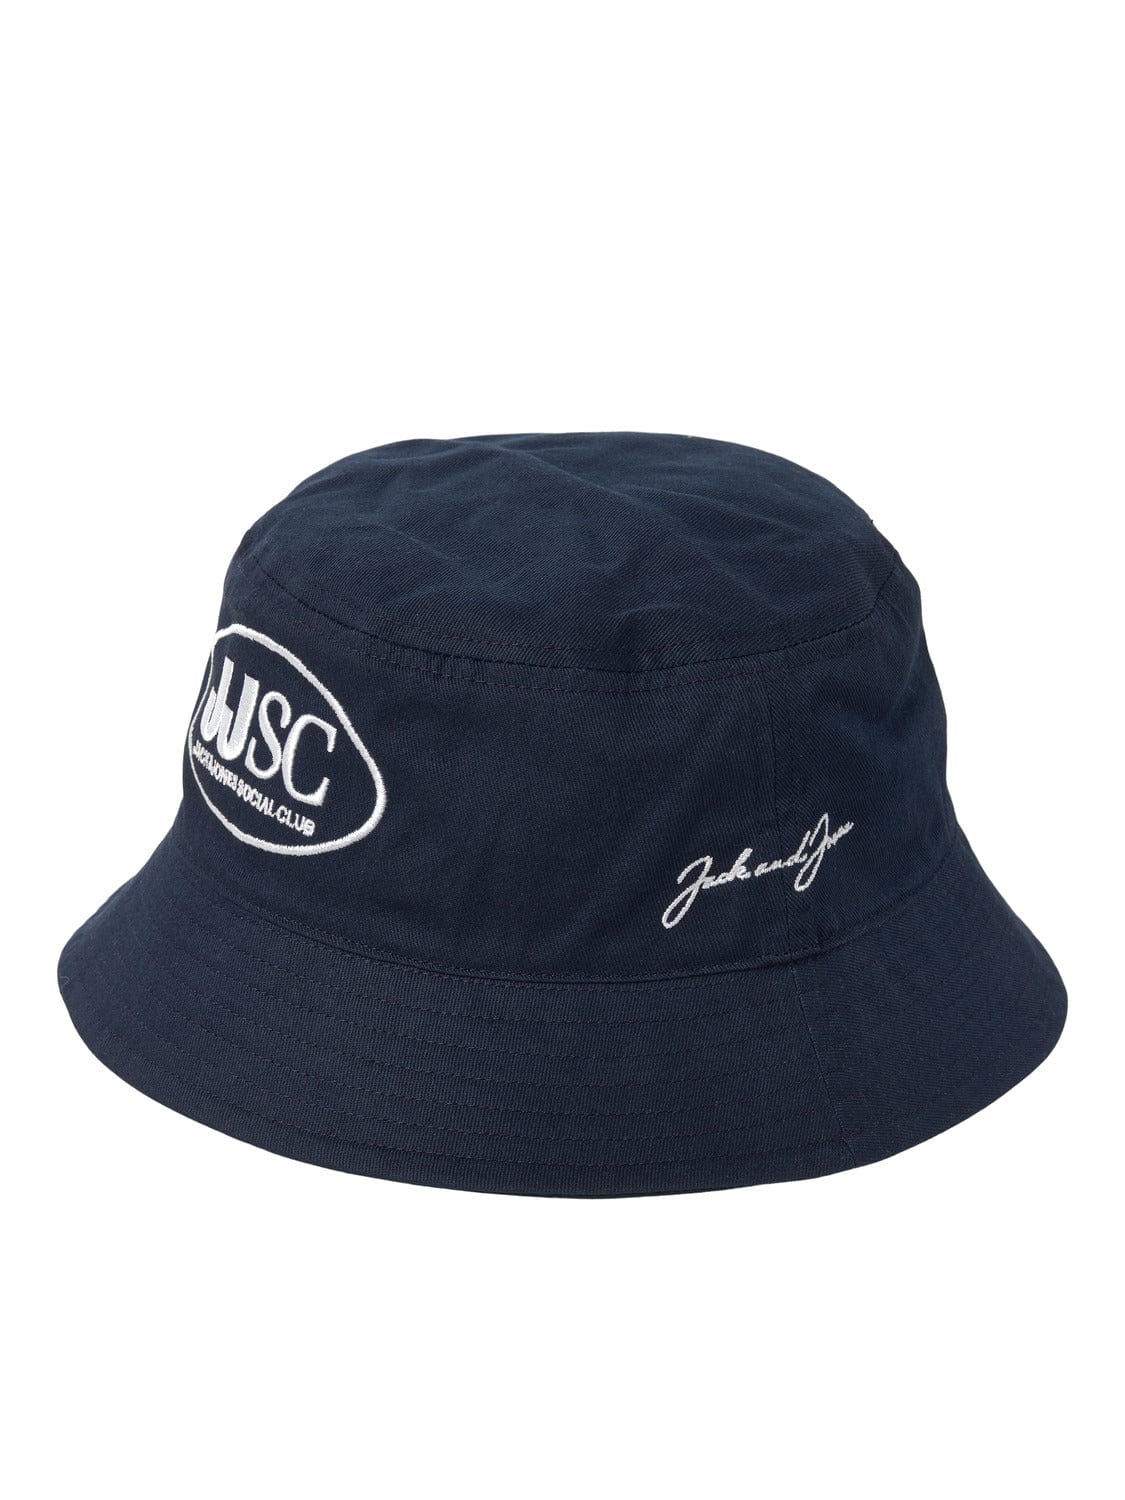 Sombrero de Pescador Club - Azul